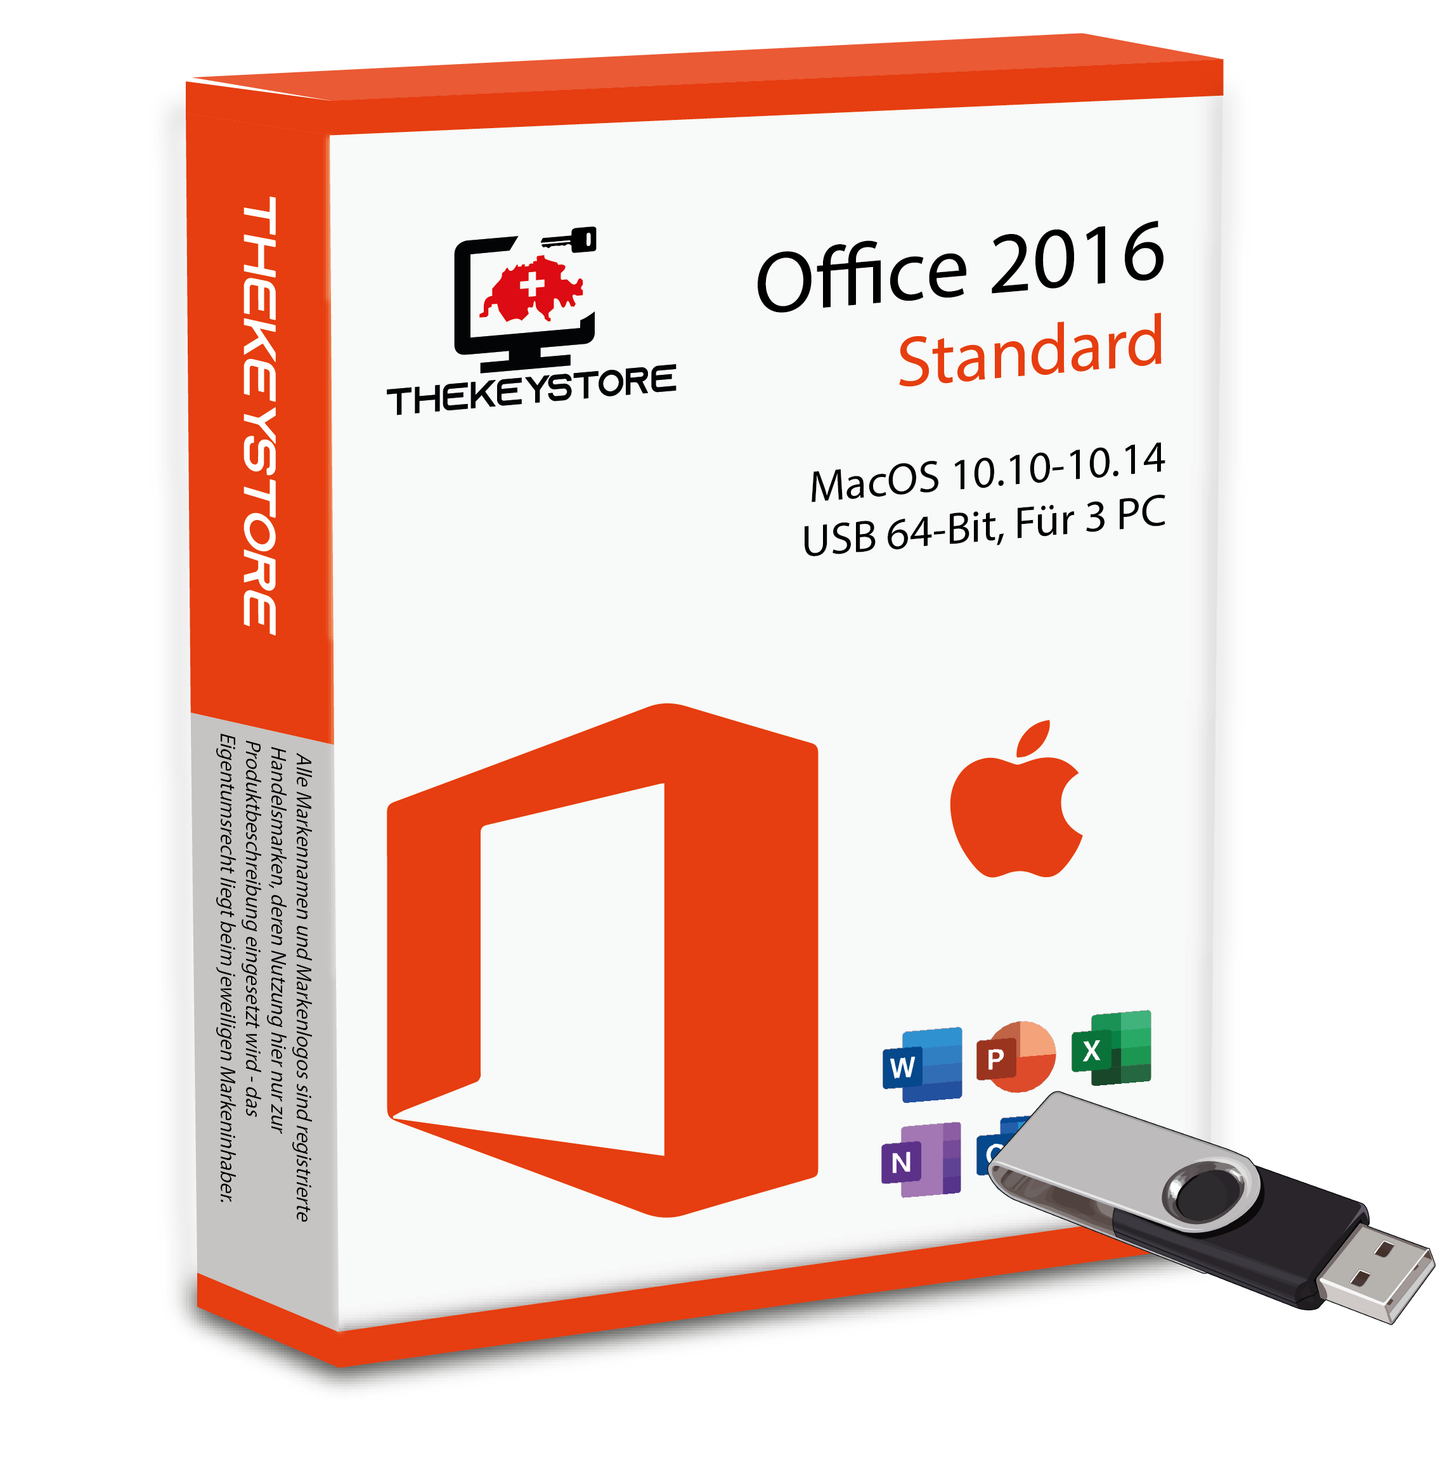 Microsoft Office 2016 Standard MacOS 10.10-10.14 - Für 3 PC - TheKeyStore Schweiz